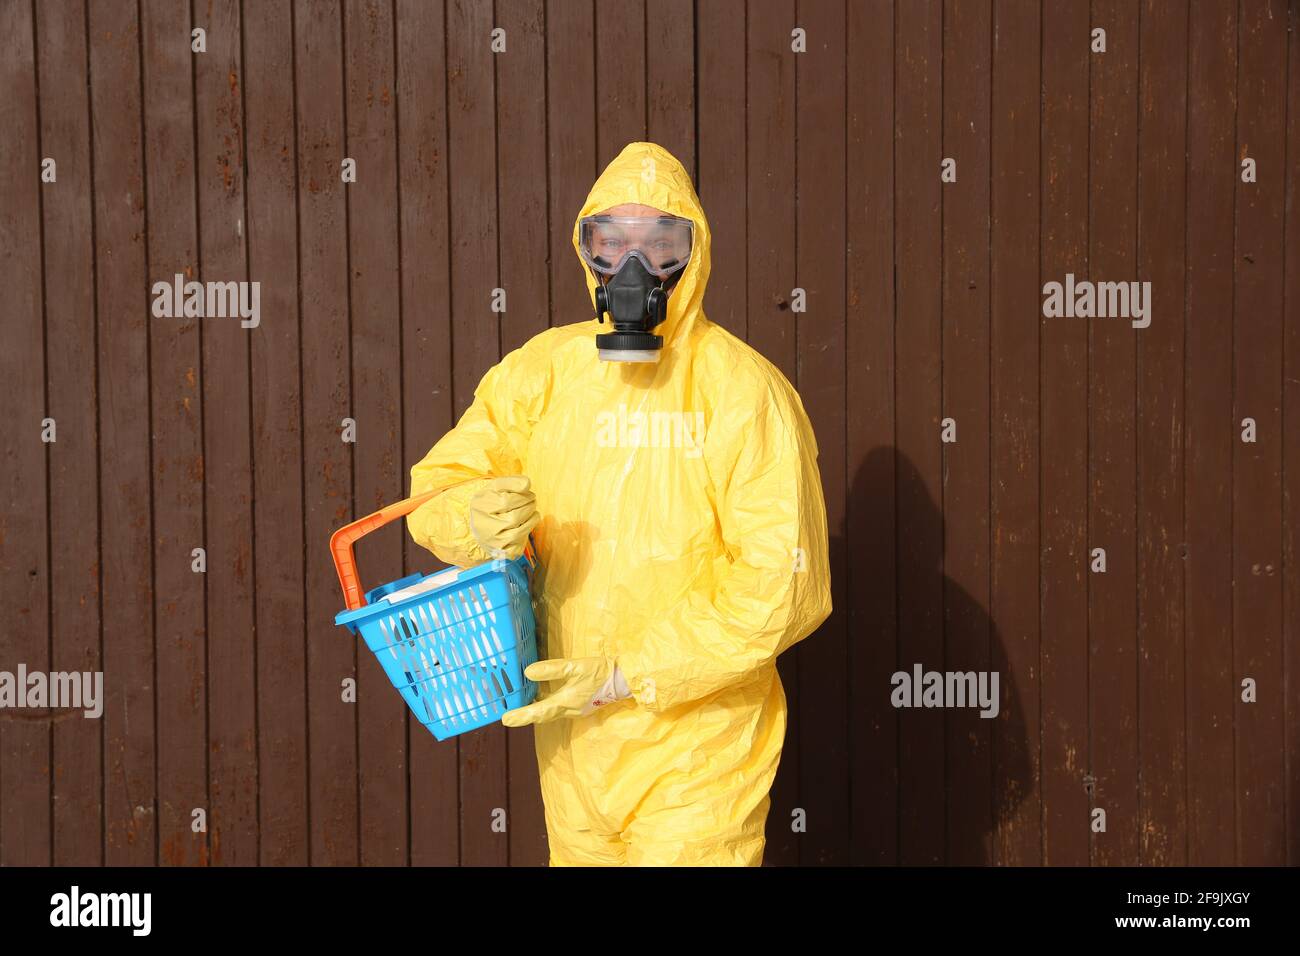 Mann im Schutzanzug mit Einkaufskorb - workwear and protective clothing Stock Photo